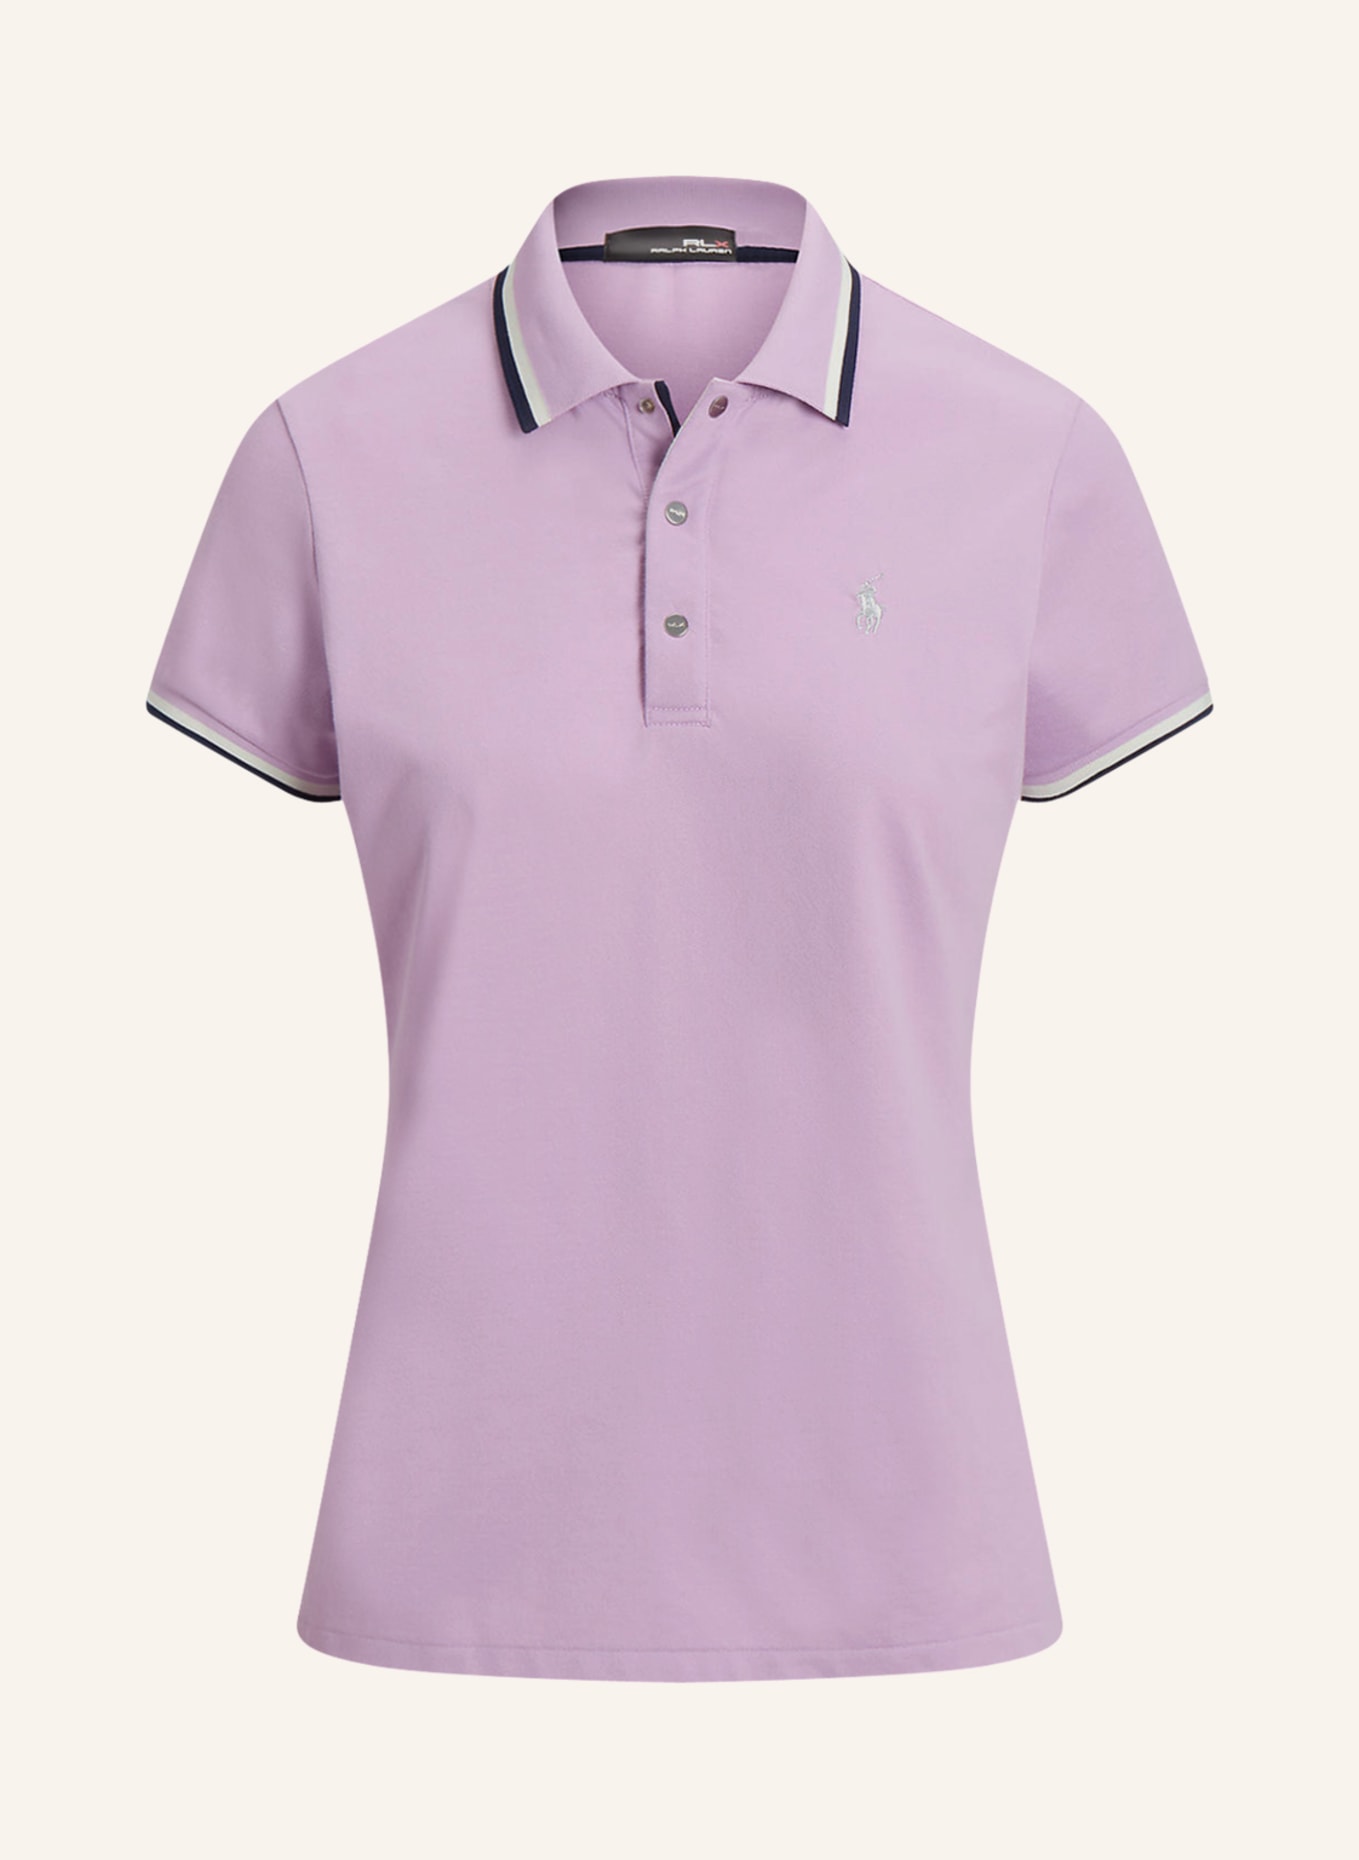 POLO RALPH LAUREN, Light purple Women's Polo Shirt